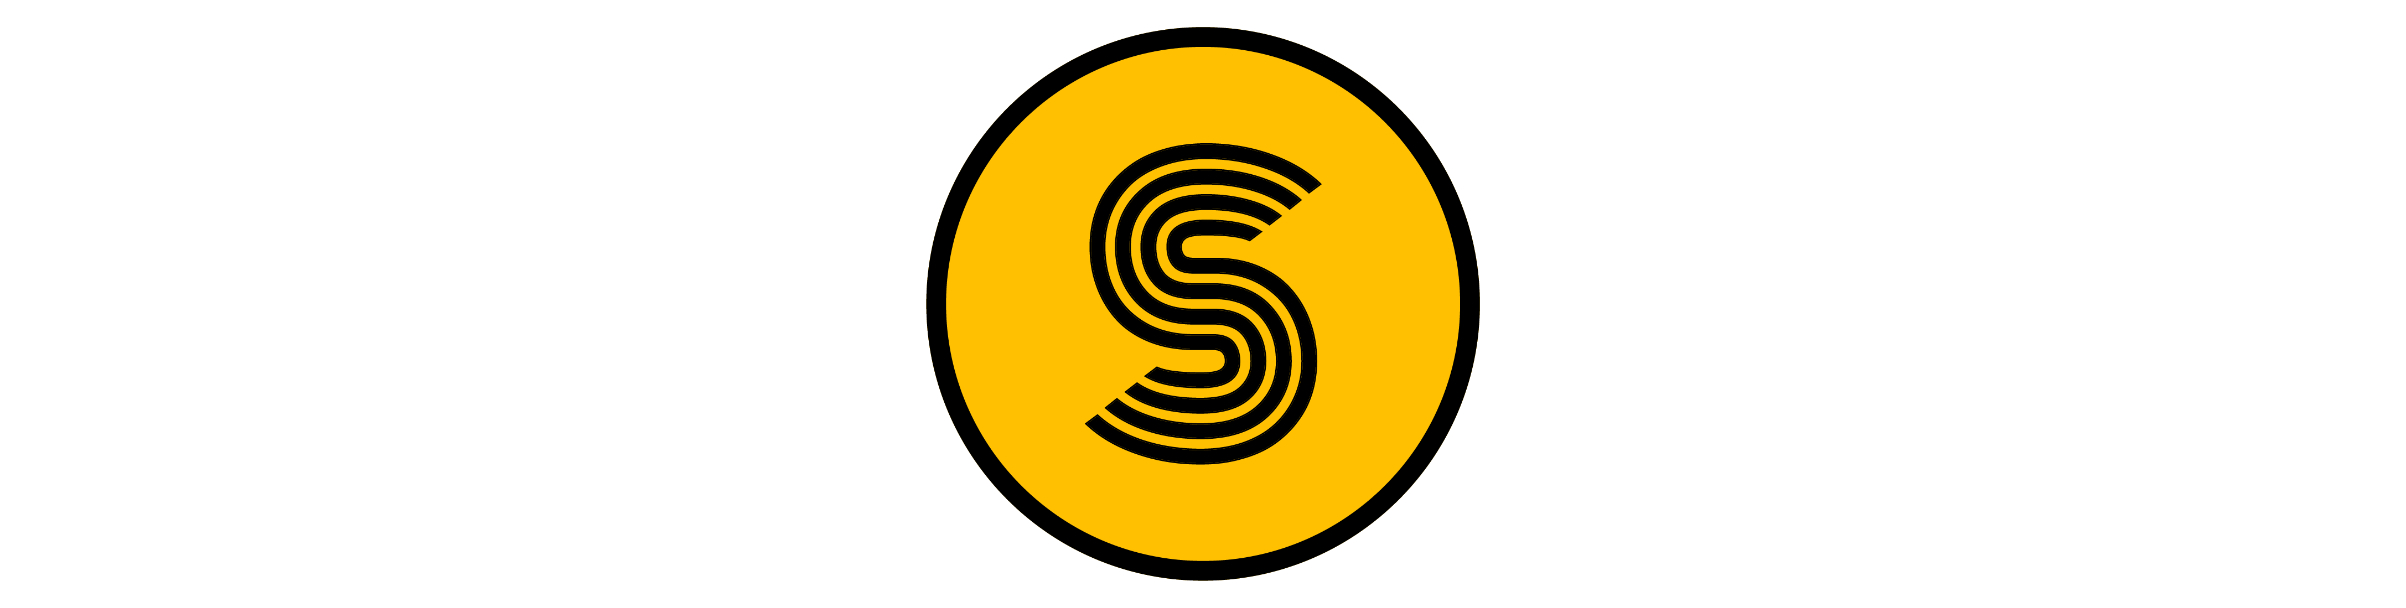 Scooty logo